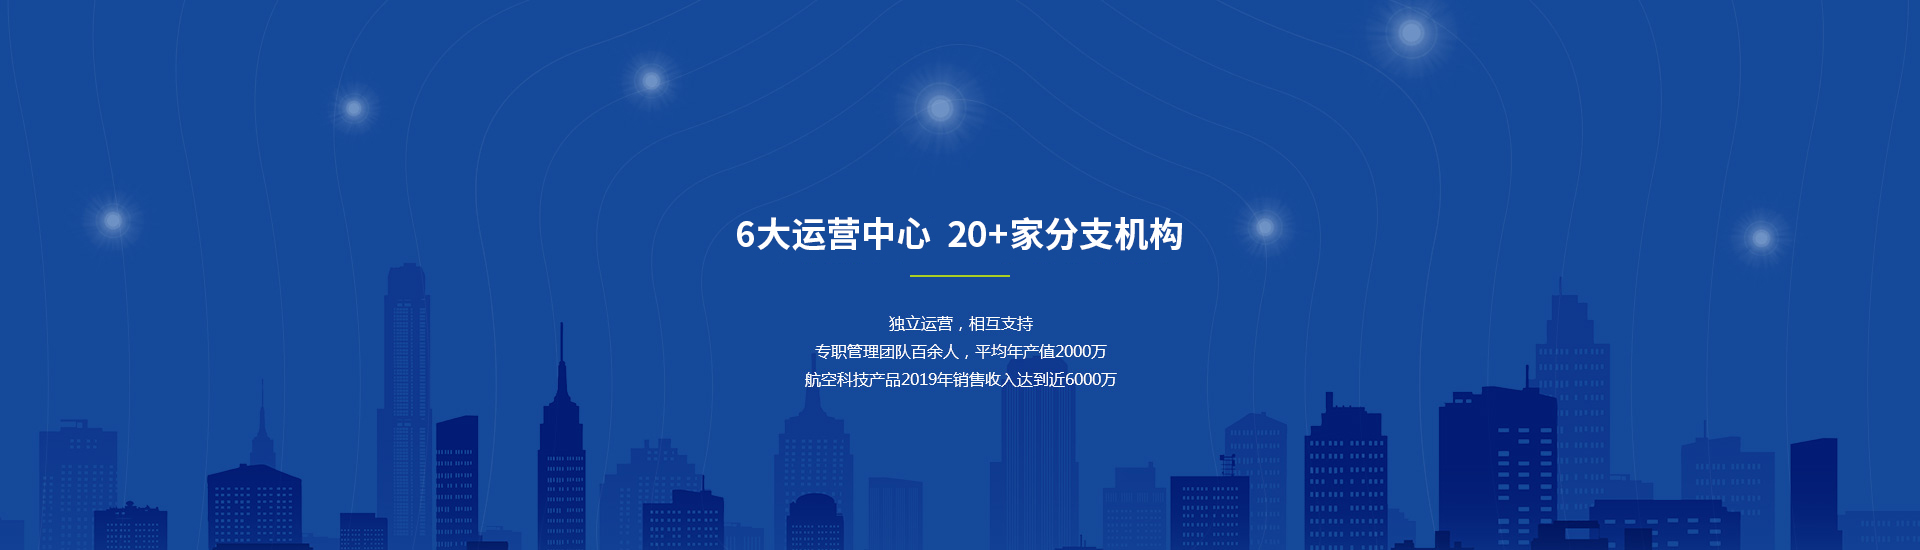 玩球网站(中国)责任有限公司产品营销展示中心